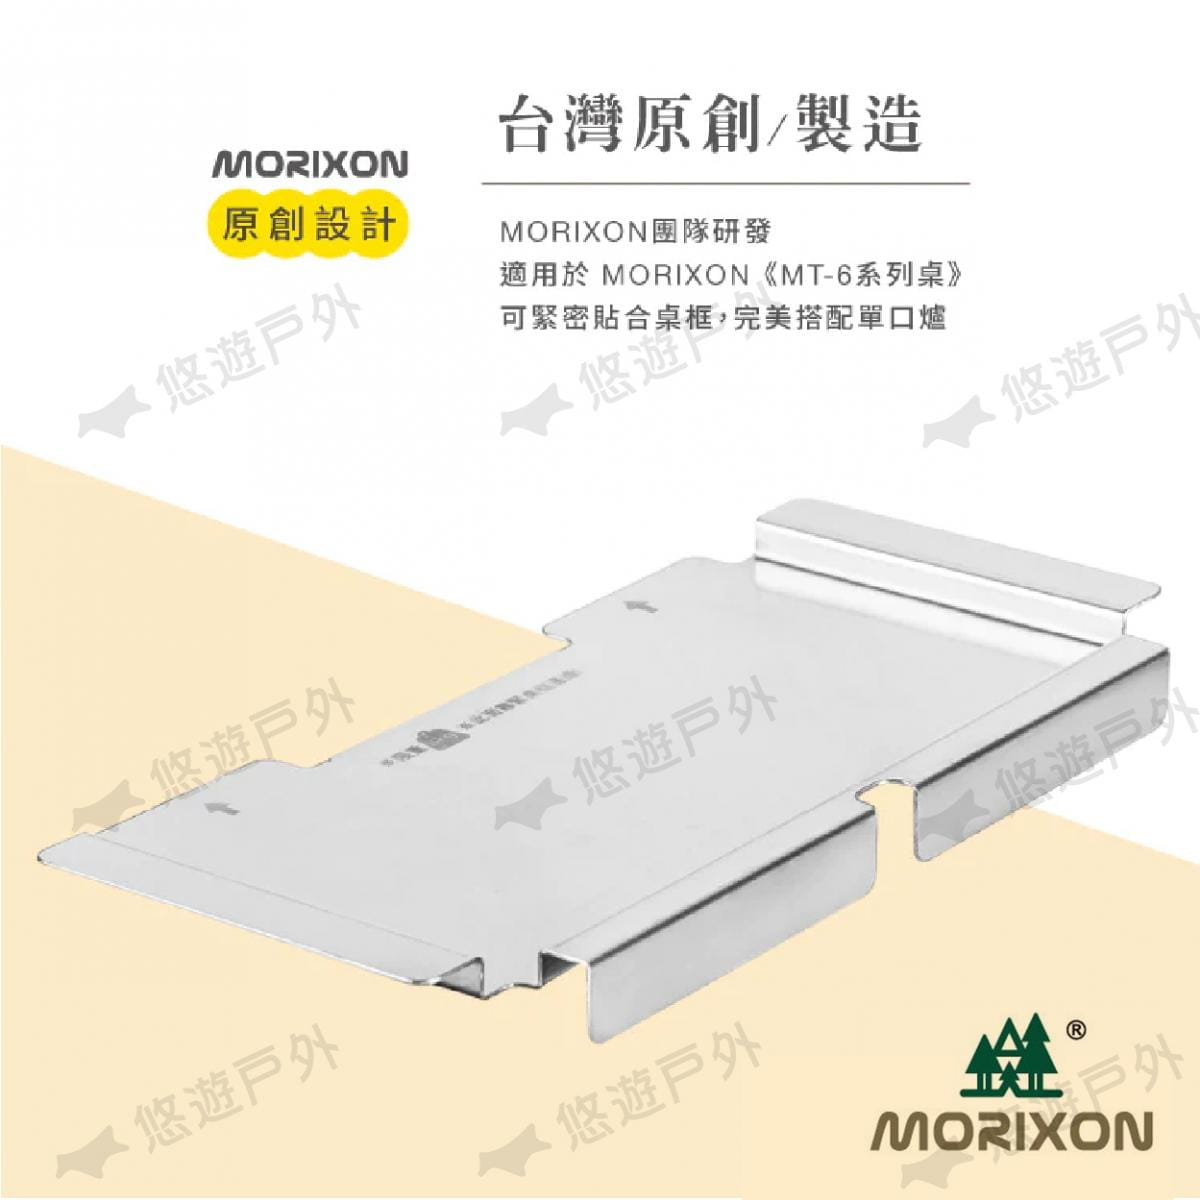 【Morixon】魔法橡木桌  IGT MT-6-5-4 野樂單口爐專用配件 (悠遊戶外) 2